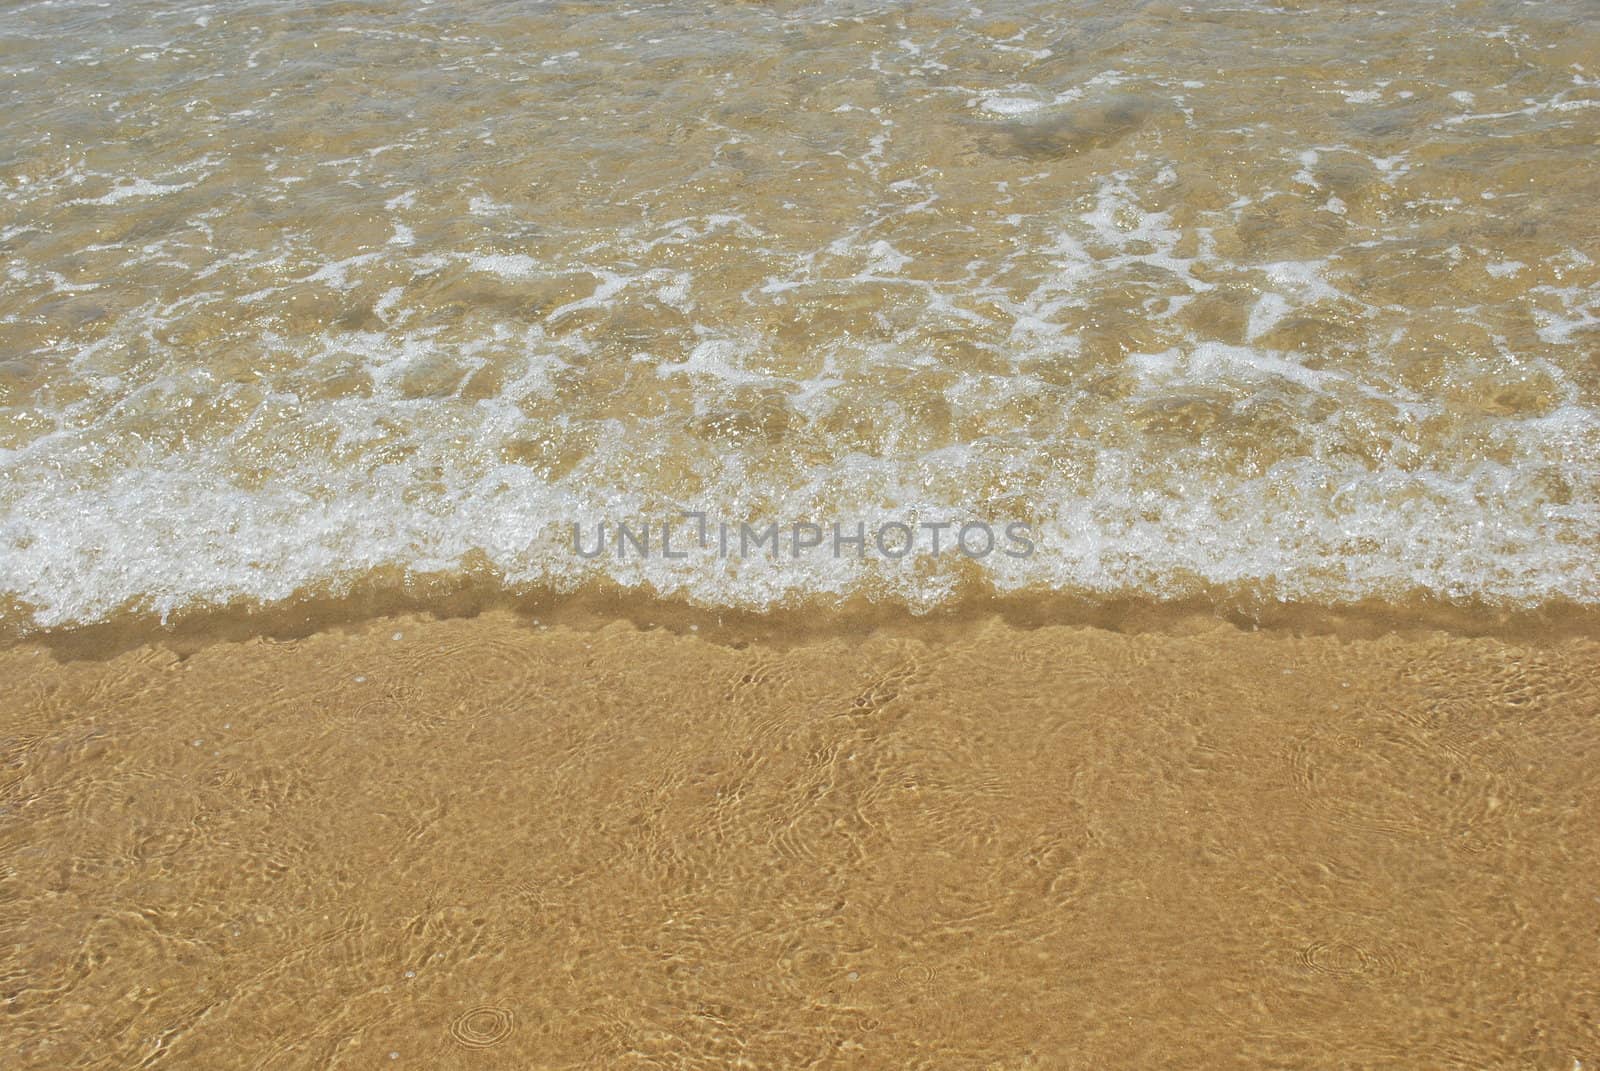 Ocean scene background by luissantos84